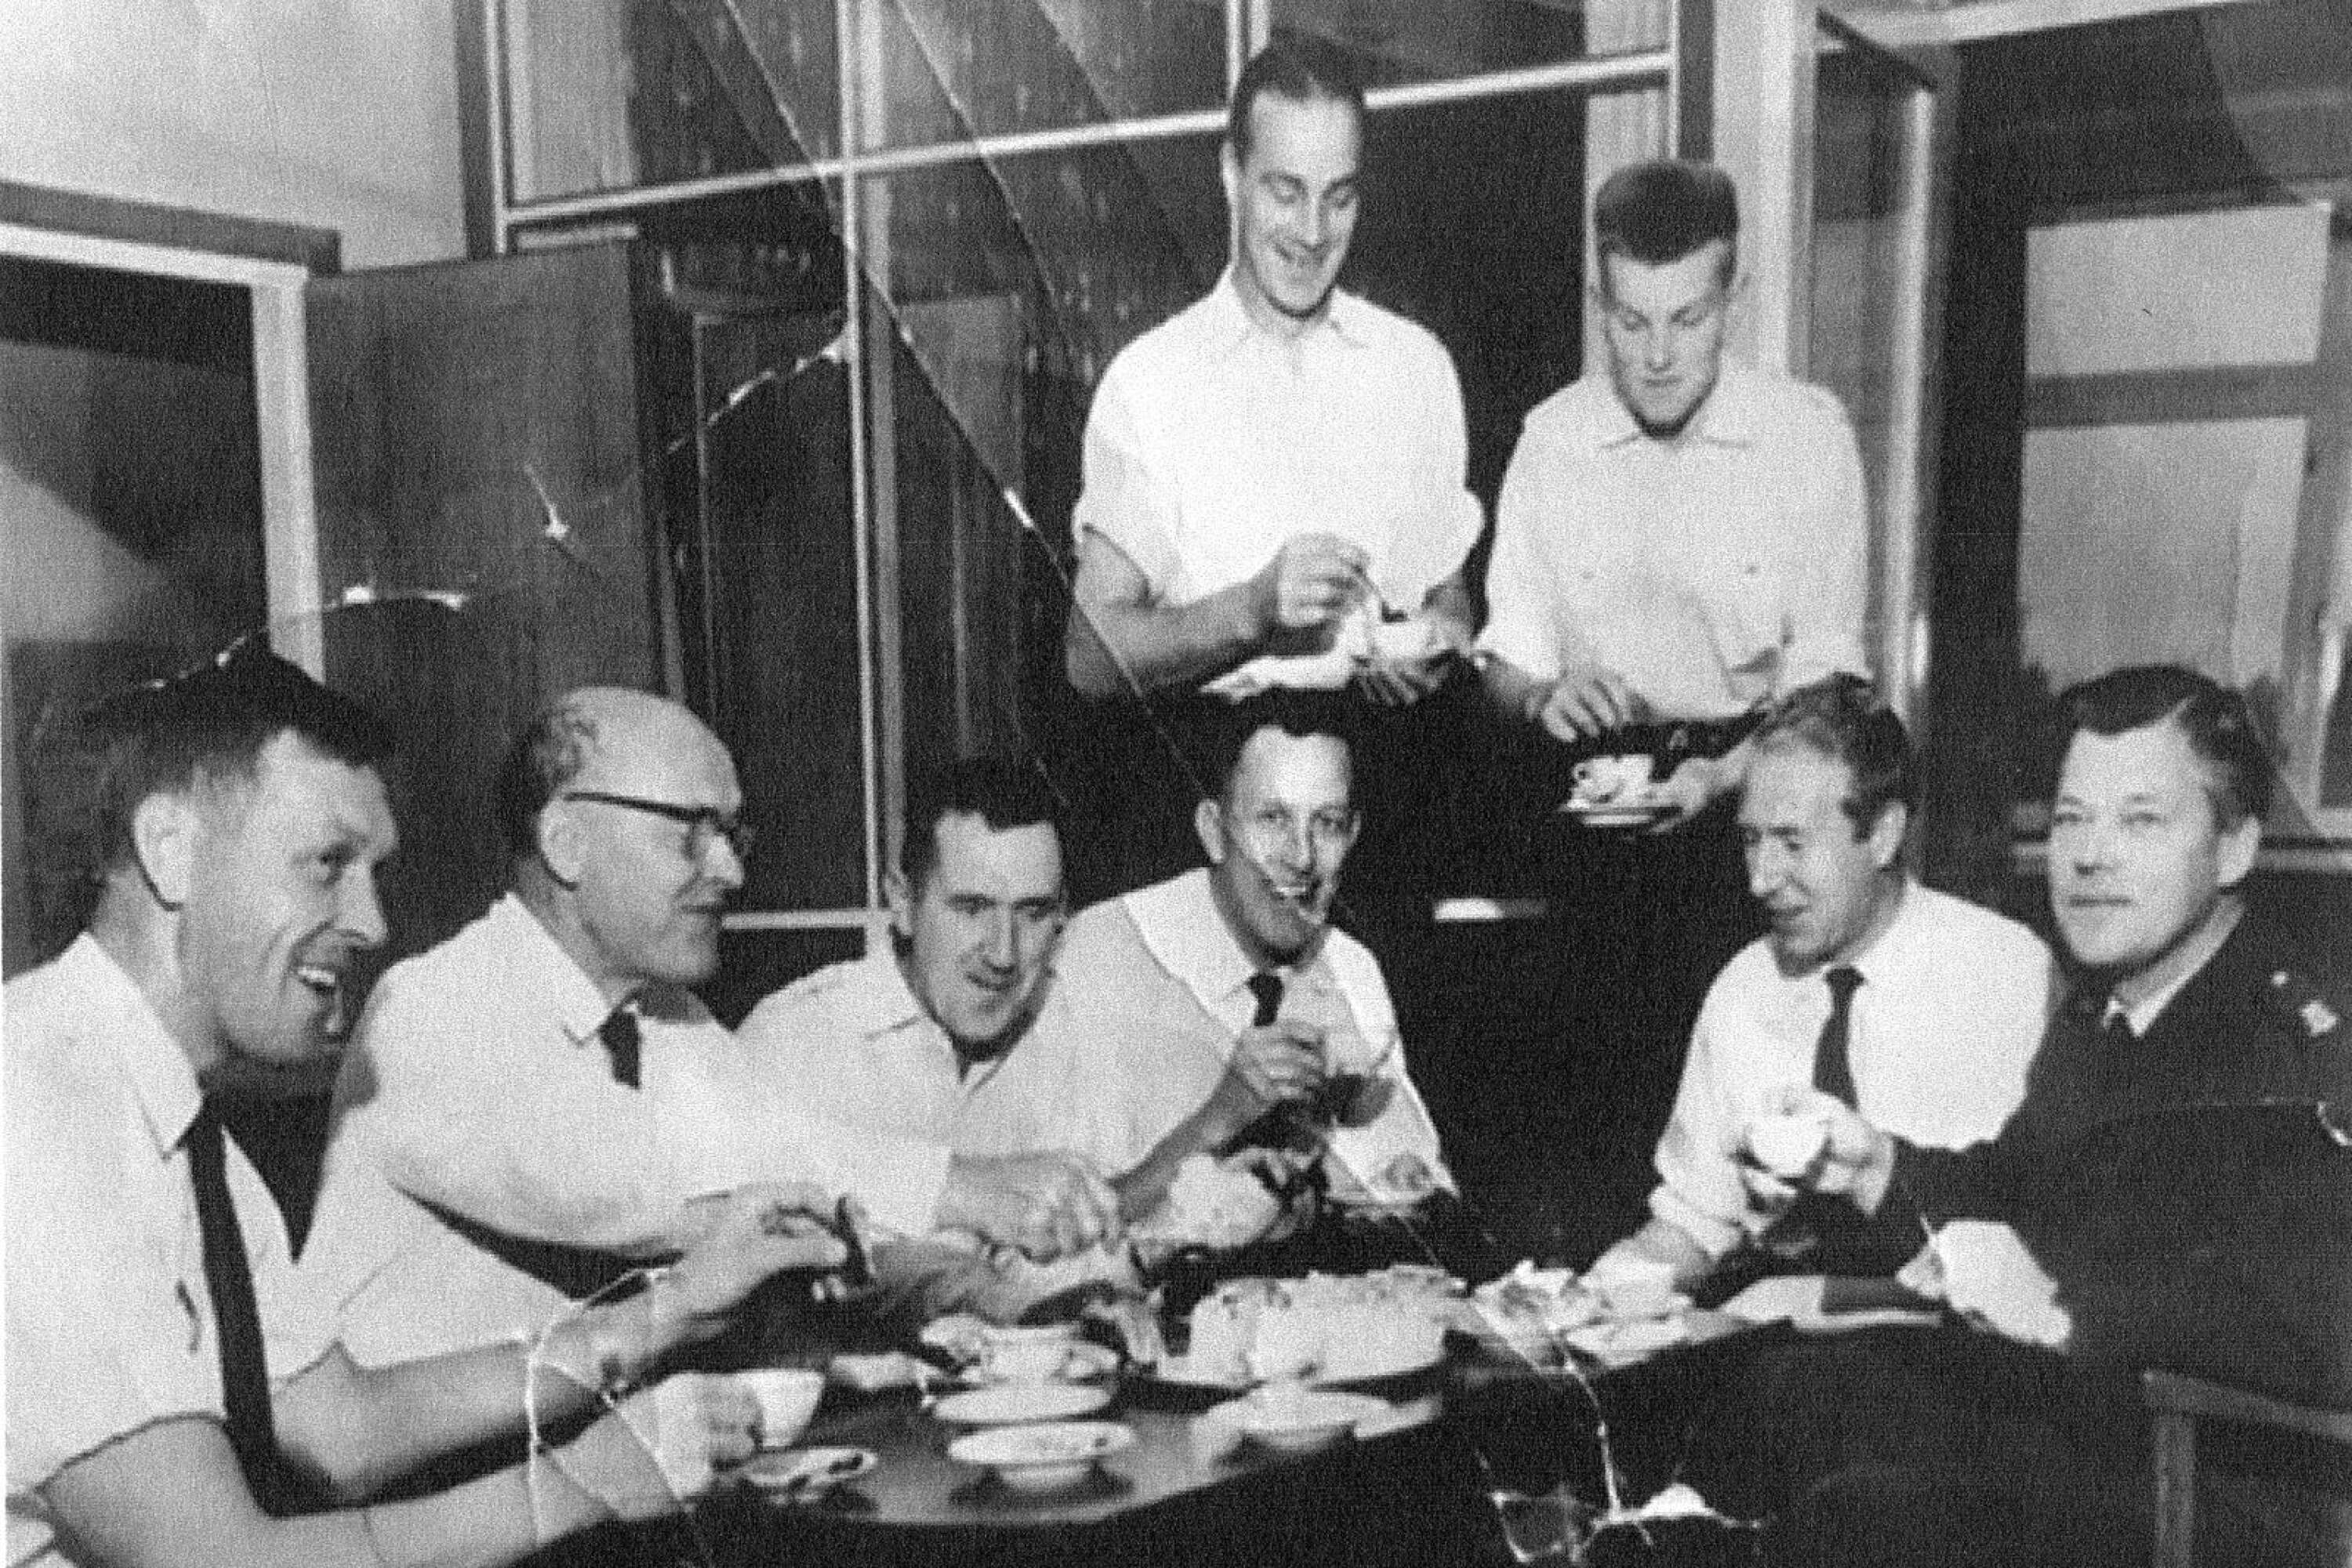 Brandmännen firar med tårta efter att Karlstadspyromanen åkte fast 1959. Sittande från vänster: P.O. Wermelin, Gösta Olsson, okänd, Erik Löved, Bengt Andersson och Gösta Måwe. Stående: Göte Grääs och Sune Almkvist. 